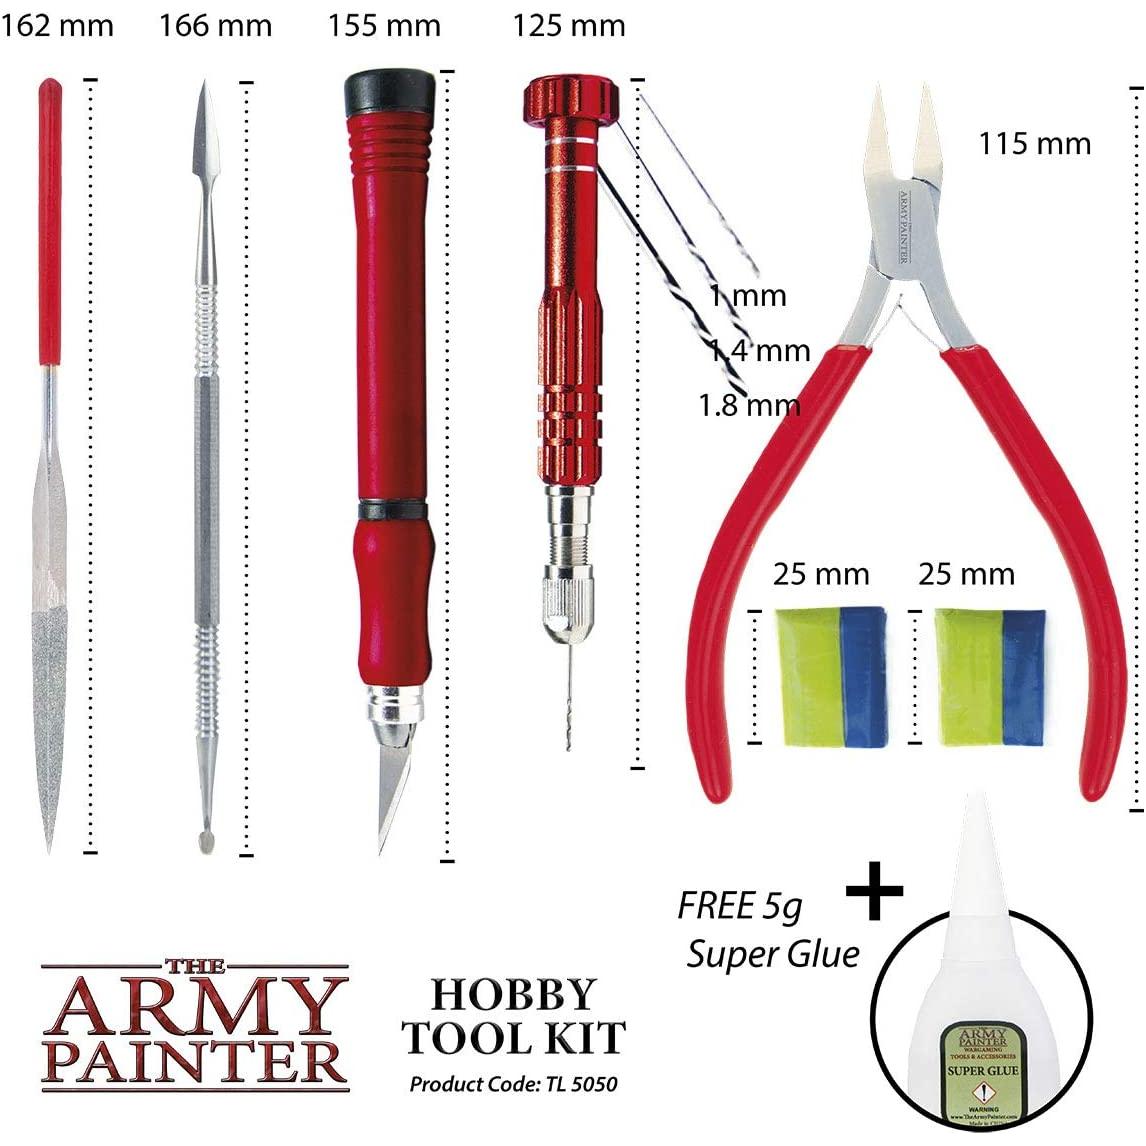 Le peintre de l'armée - Kit d'outils de loisirs